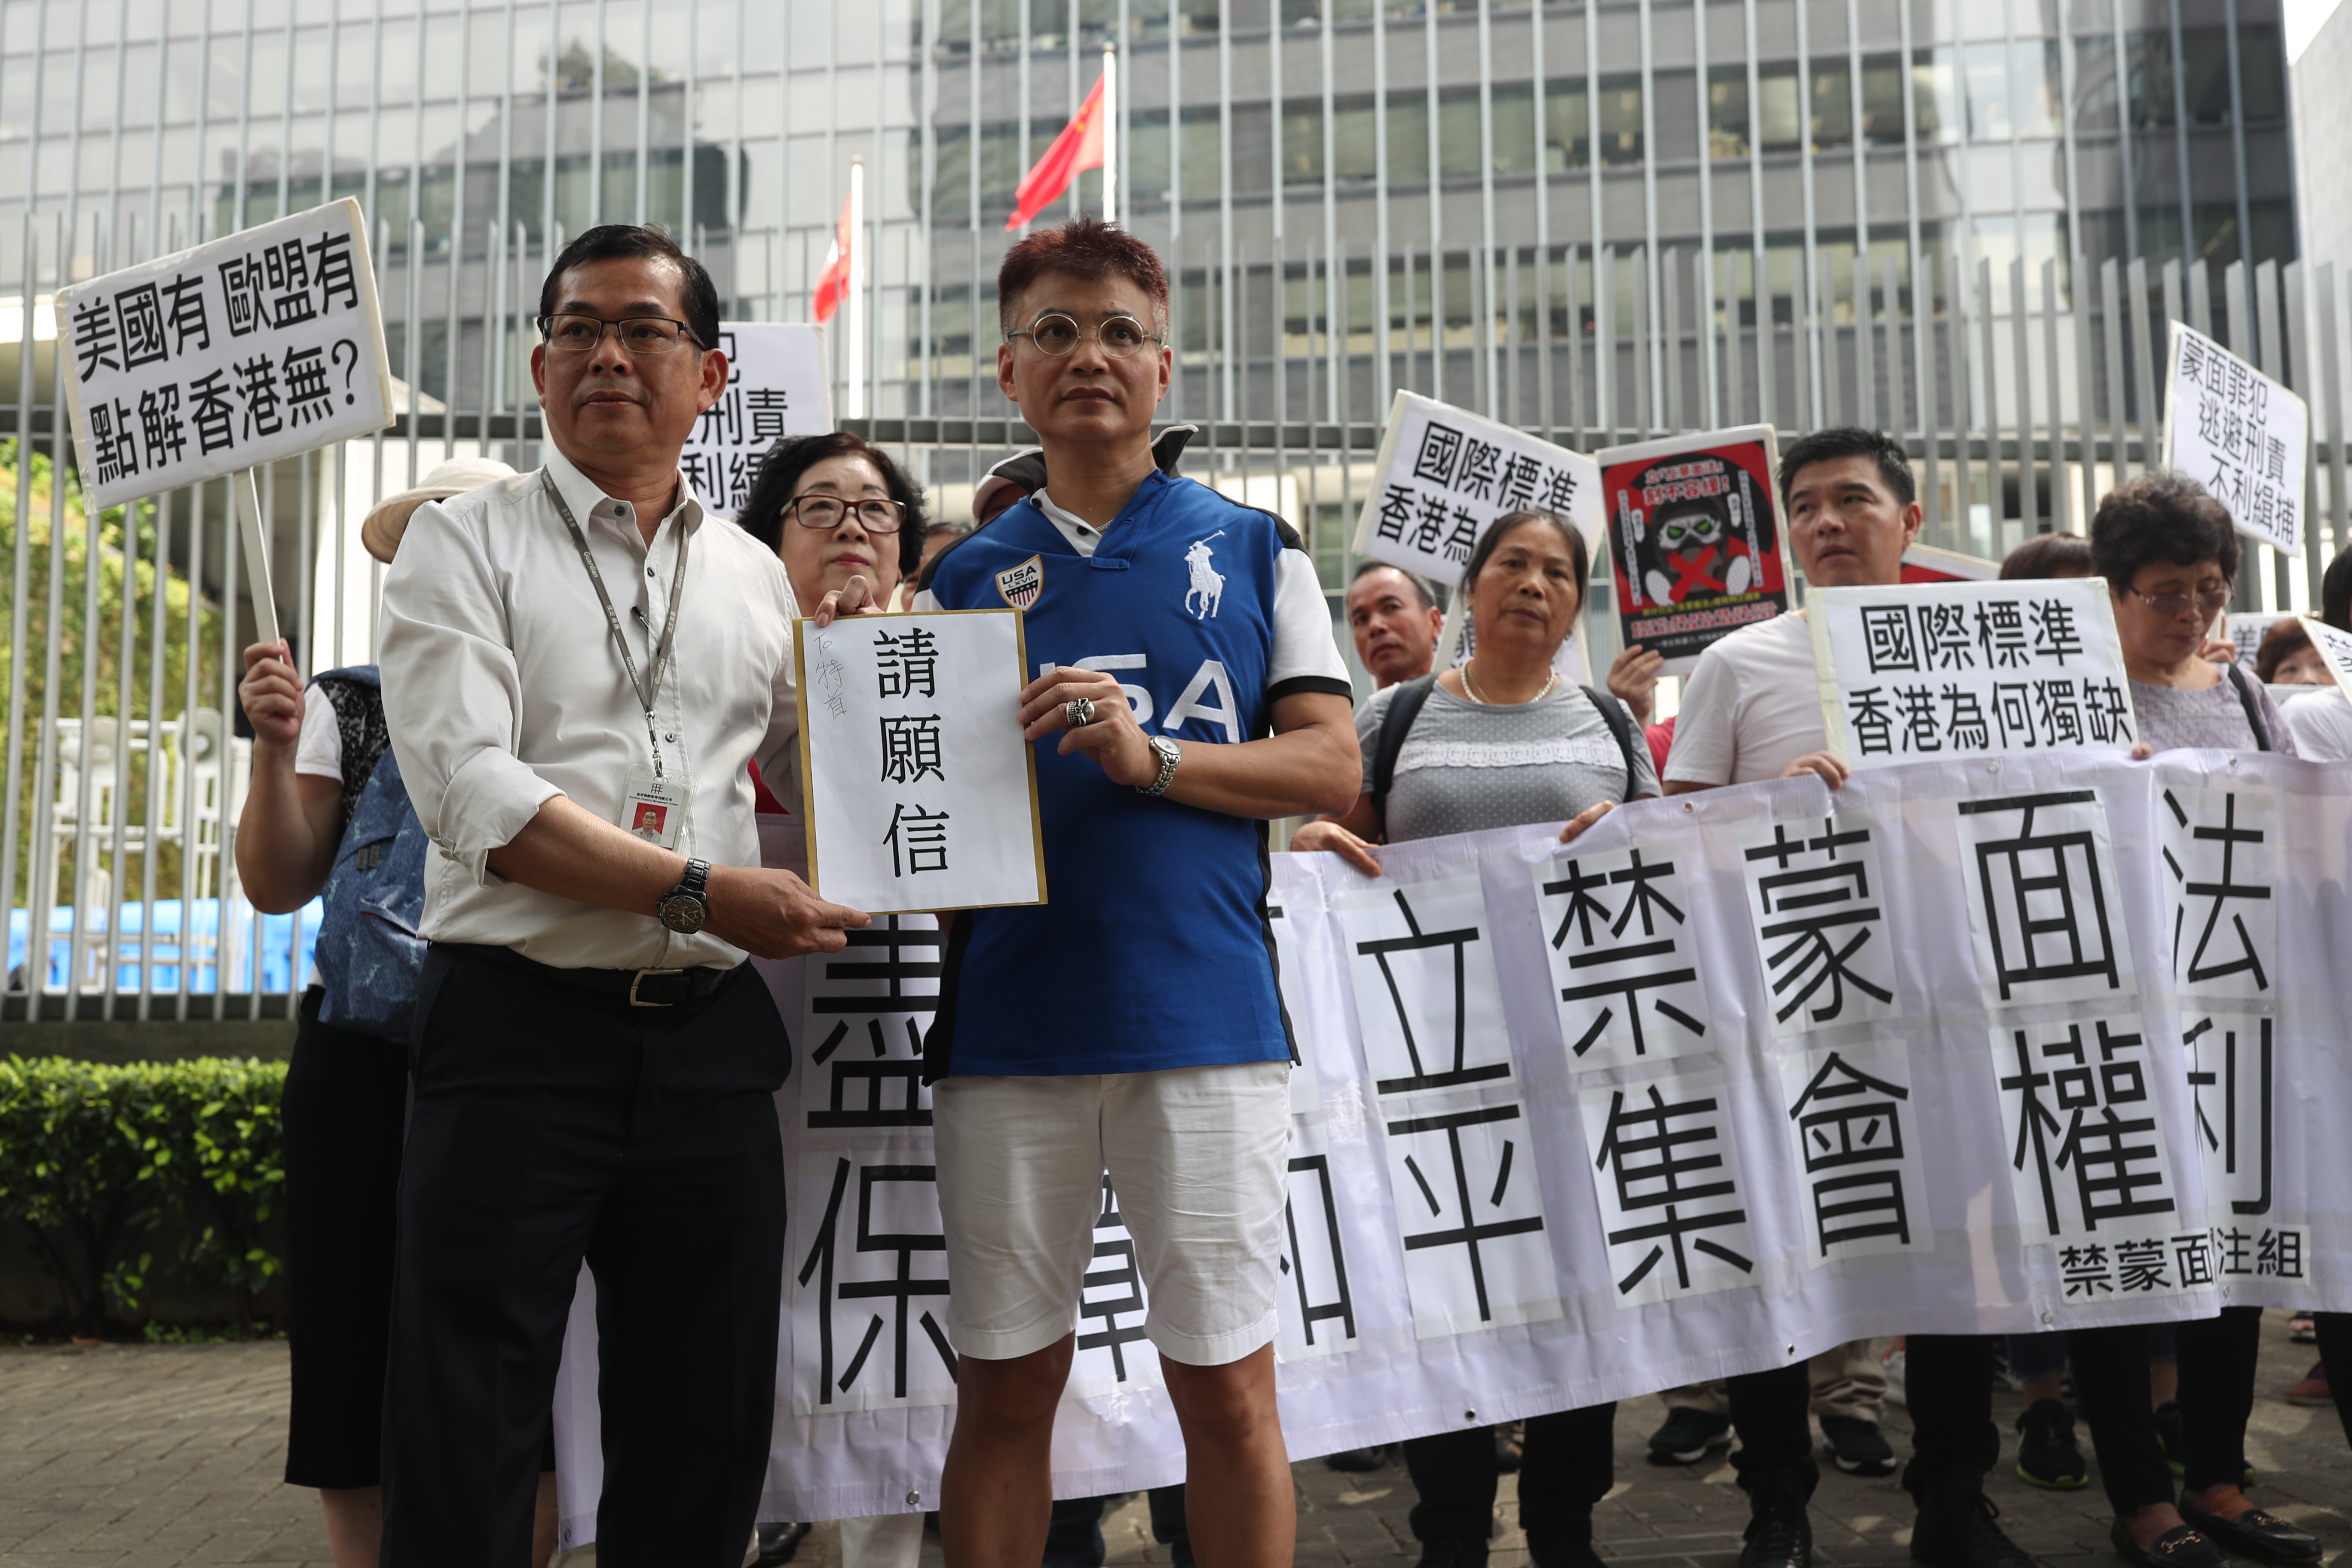 香港民间团体特区政府总部请愿,呼吁禁止蒙面游行